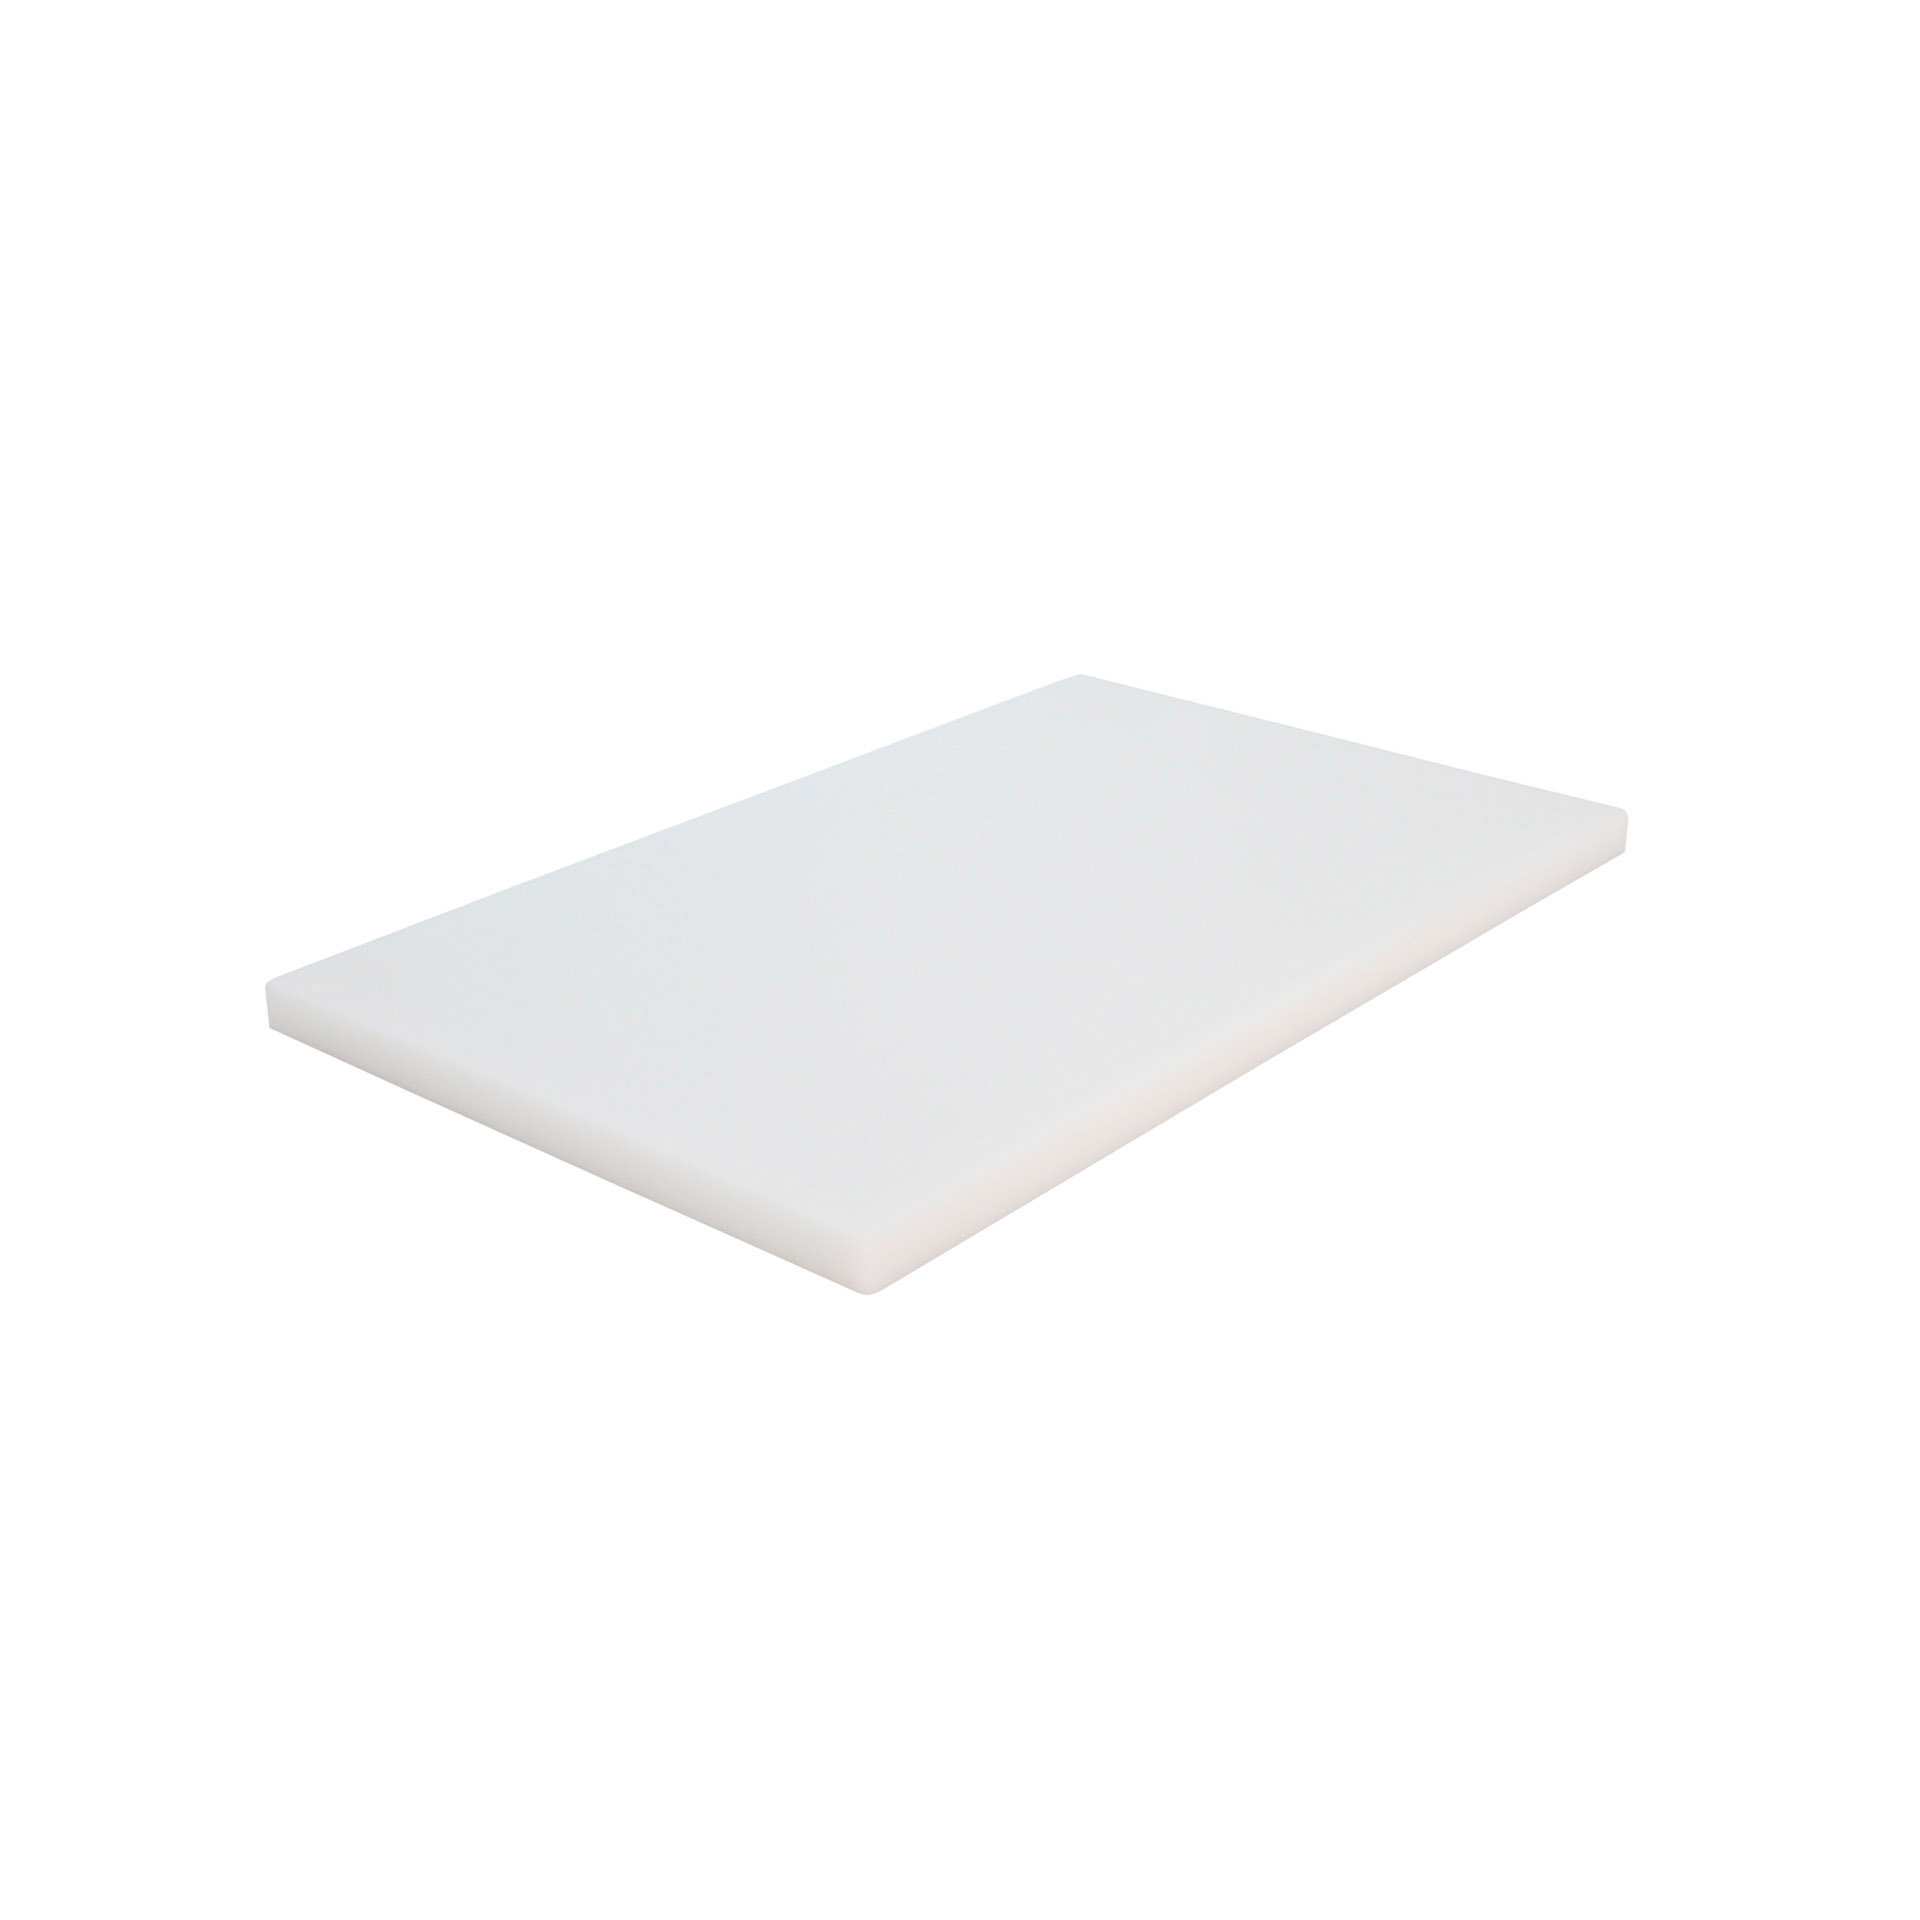 GN-Schneidebrett - mit Füßen - weiß - GN 1/1 (530 x 325 mm) - Polyethylen - 228310-C